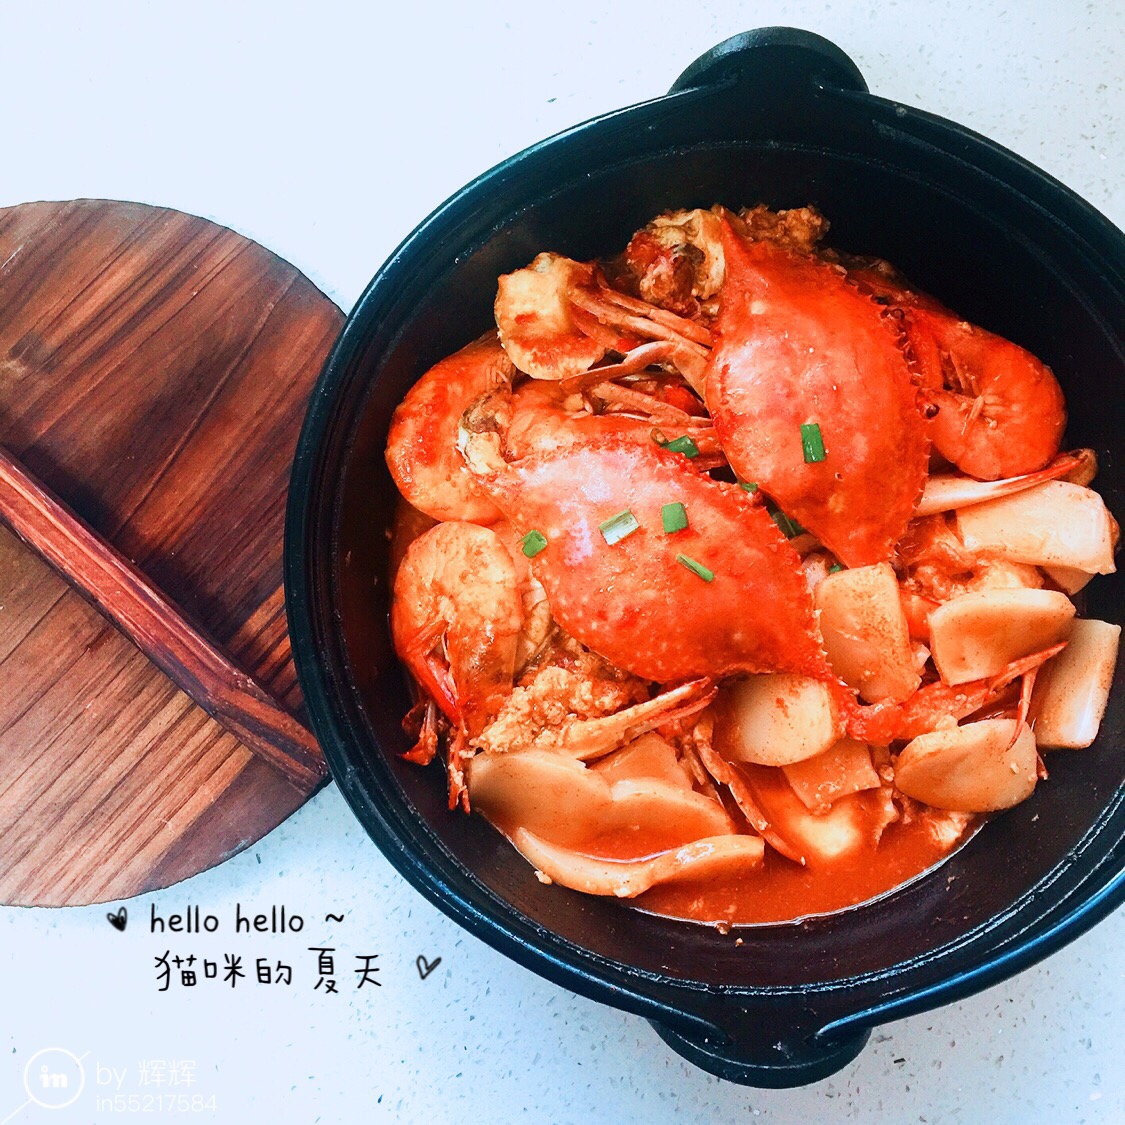 吃出满满幸福感的韩式海鲜年糕锅